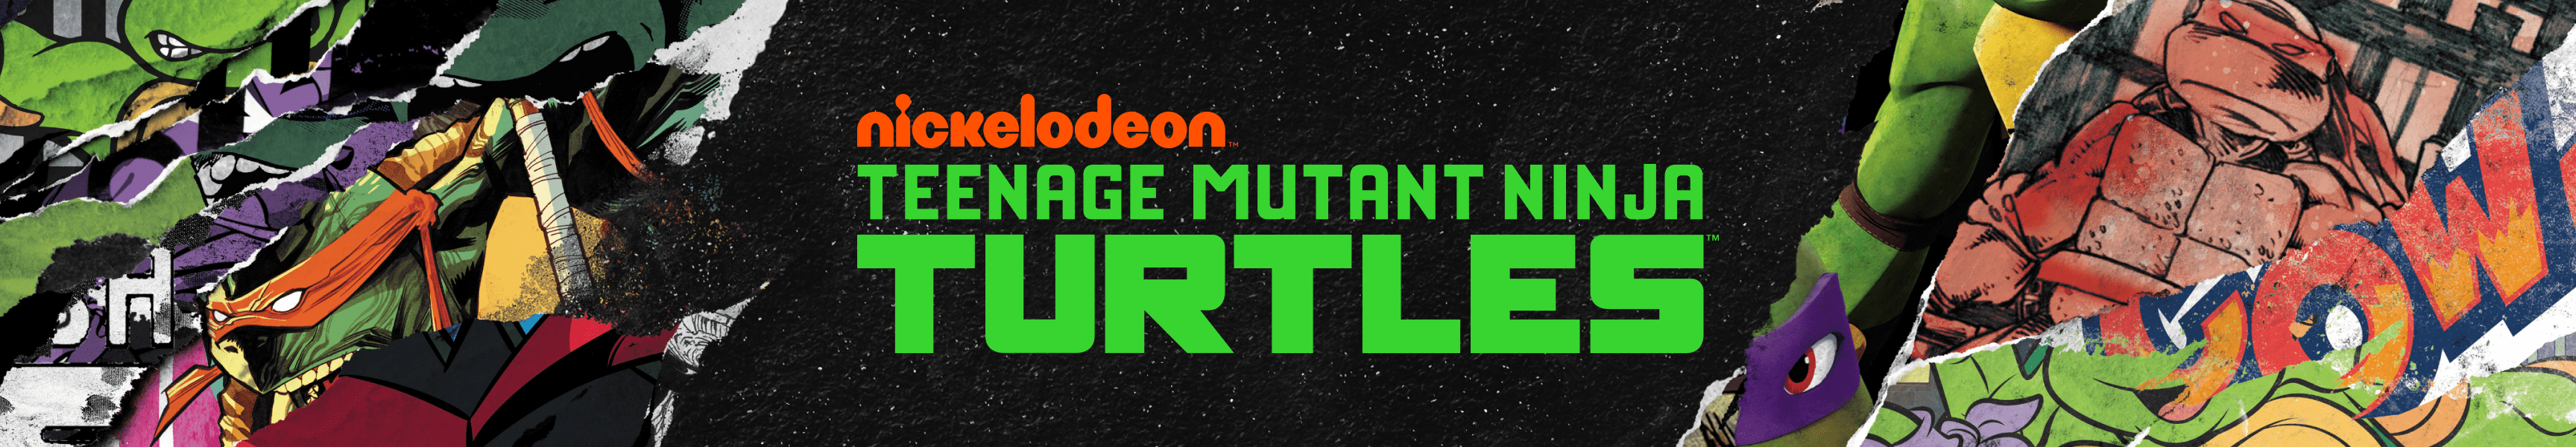 Teenage Mutant Ninja Turtles Videospiel-Artwork